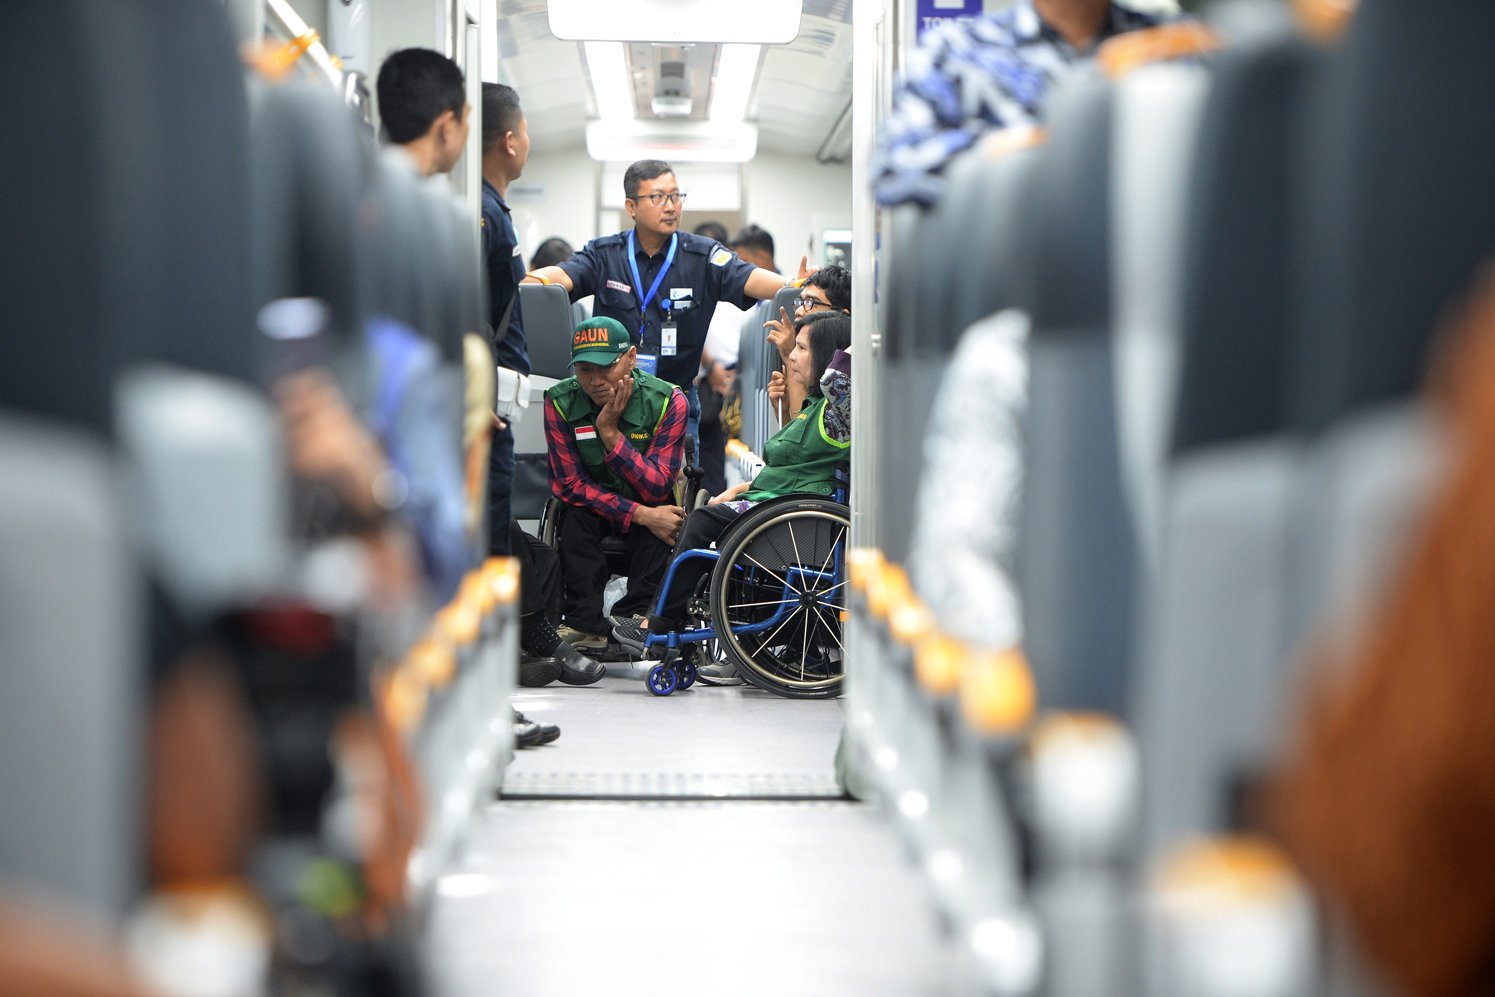 Penumpang disabilitas ikut mencoba kereta bandara usai peresmian oleh Jokowi Selasa (2/1). Meski menyediakan bangku penumpang khusus disabilitas, kereta bandara masih dianggap belum sepenuhnya ramah disabilitas. 